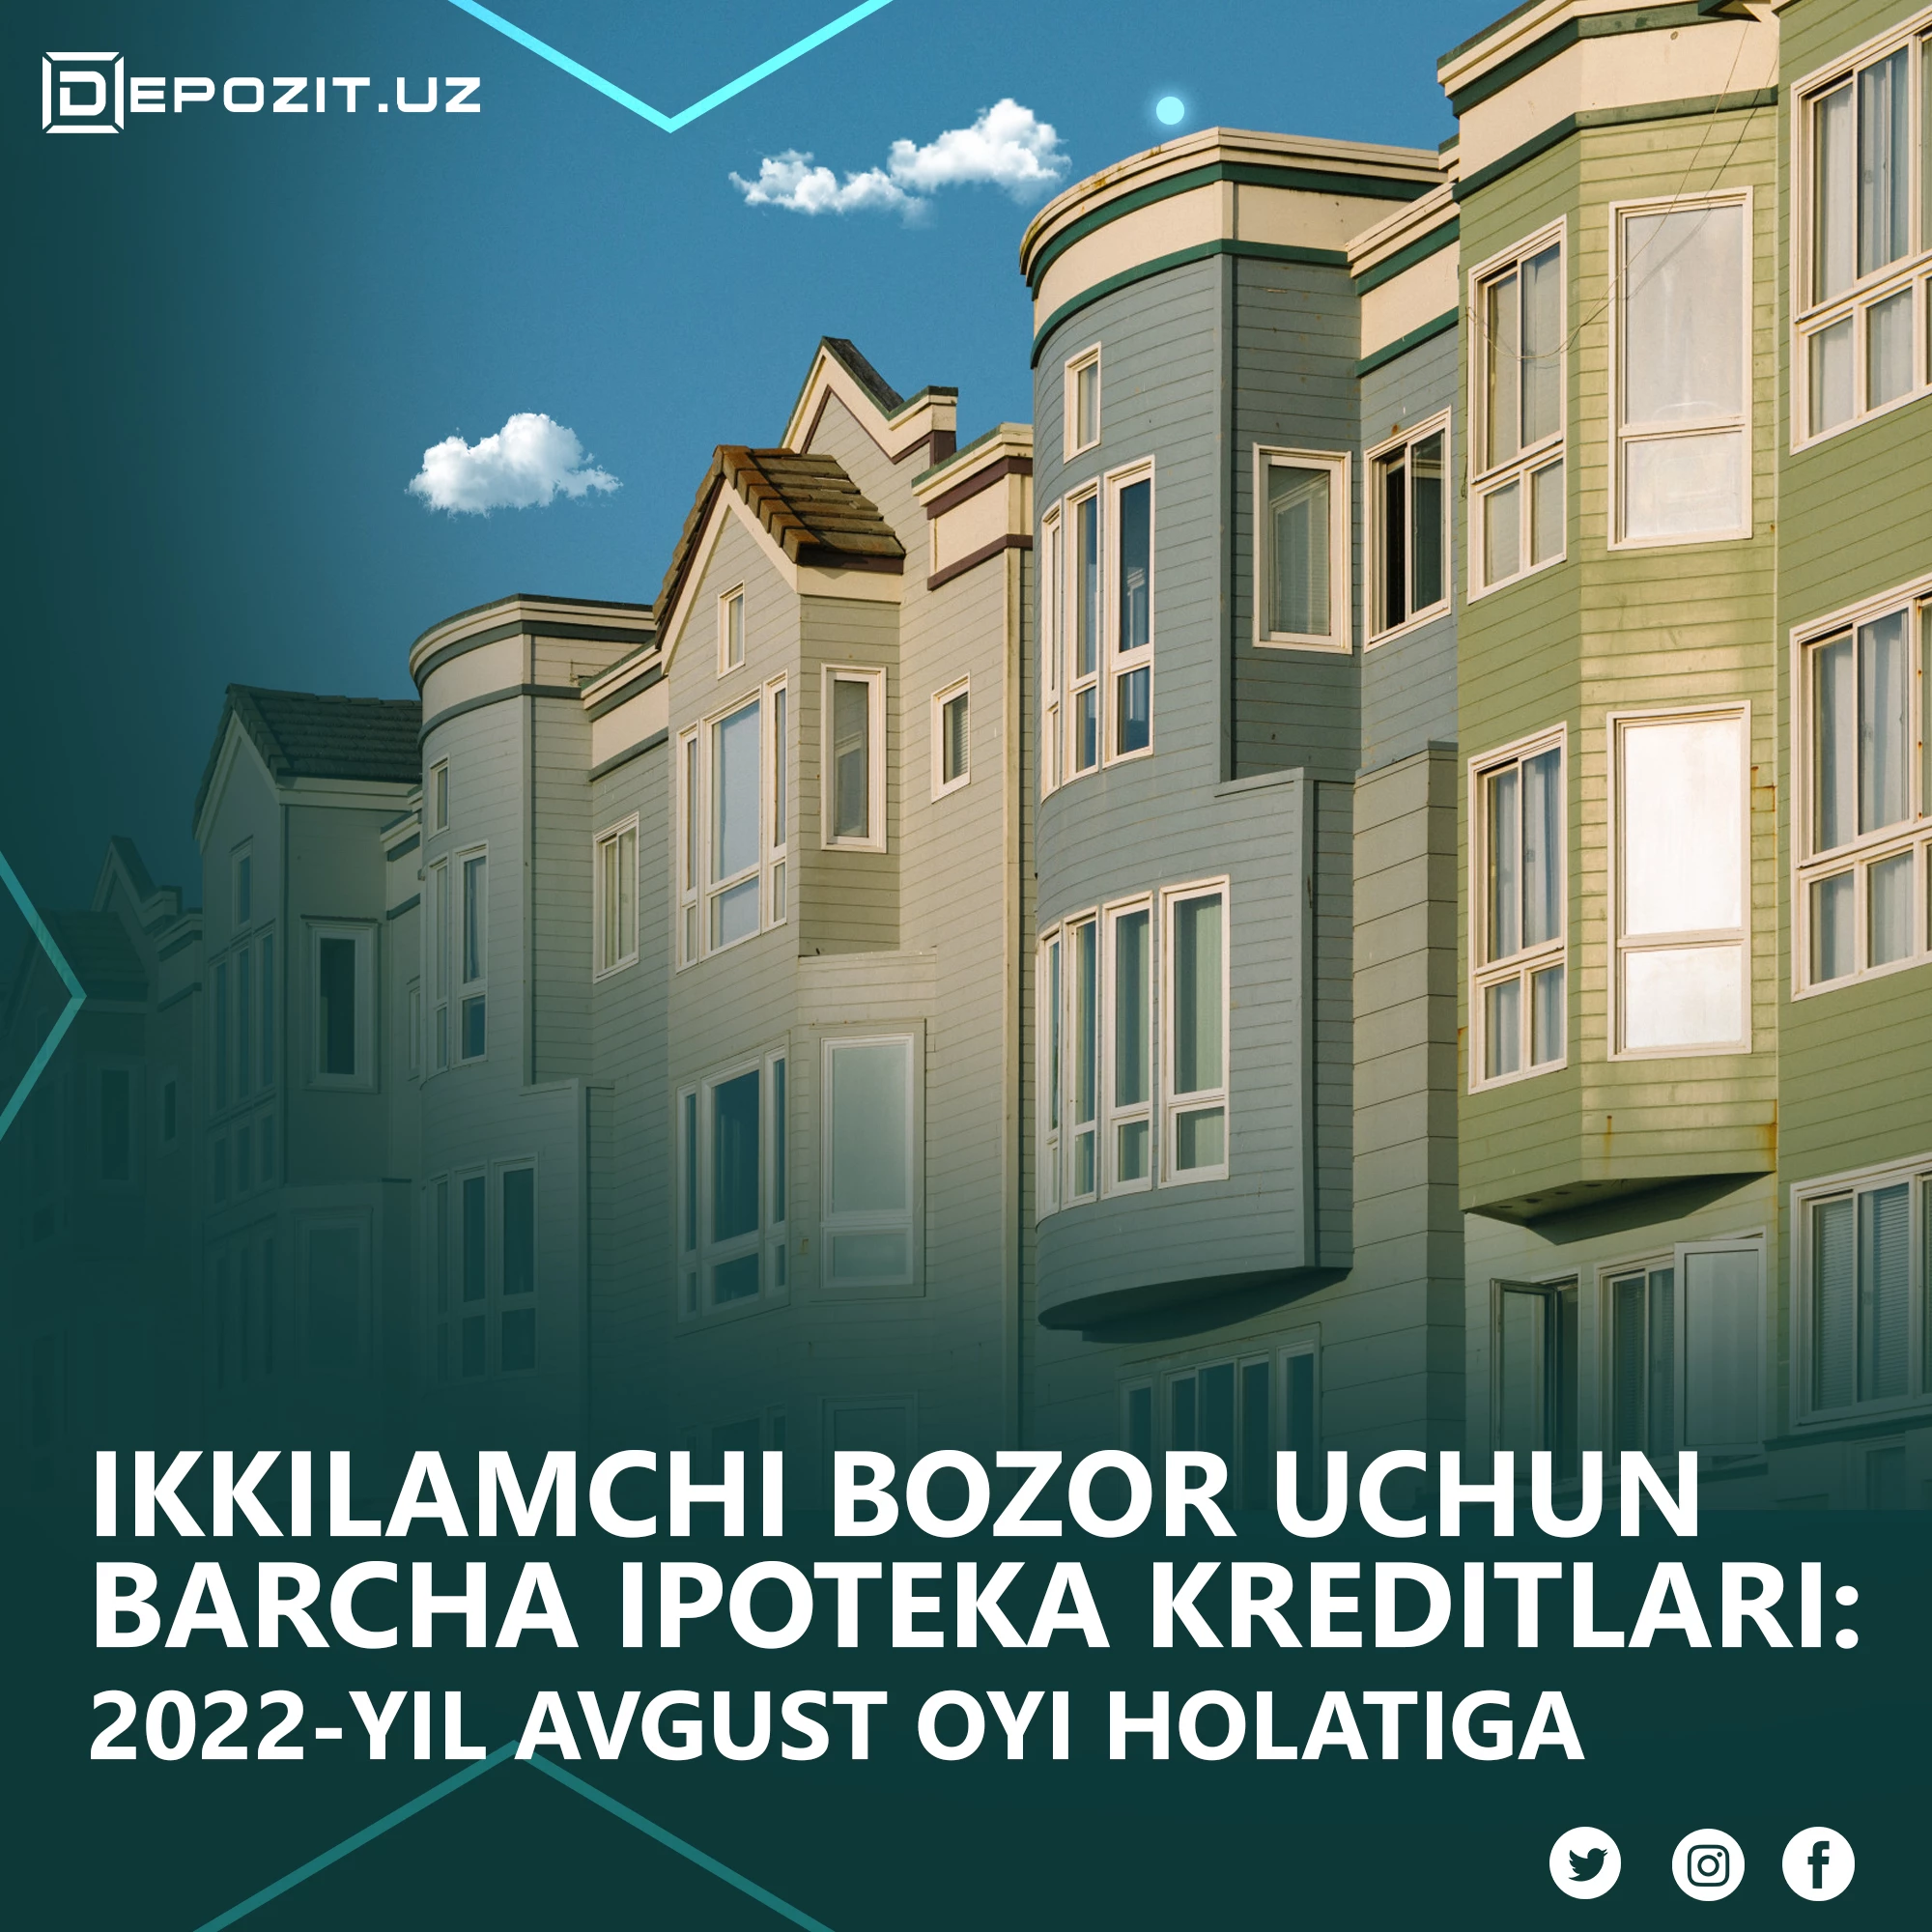 Ипотечные кредиты для вторичного рынка: по состоянию на август 2022 года